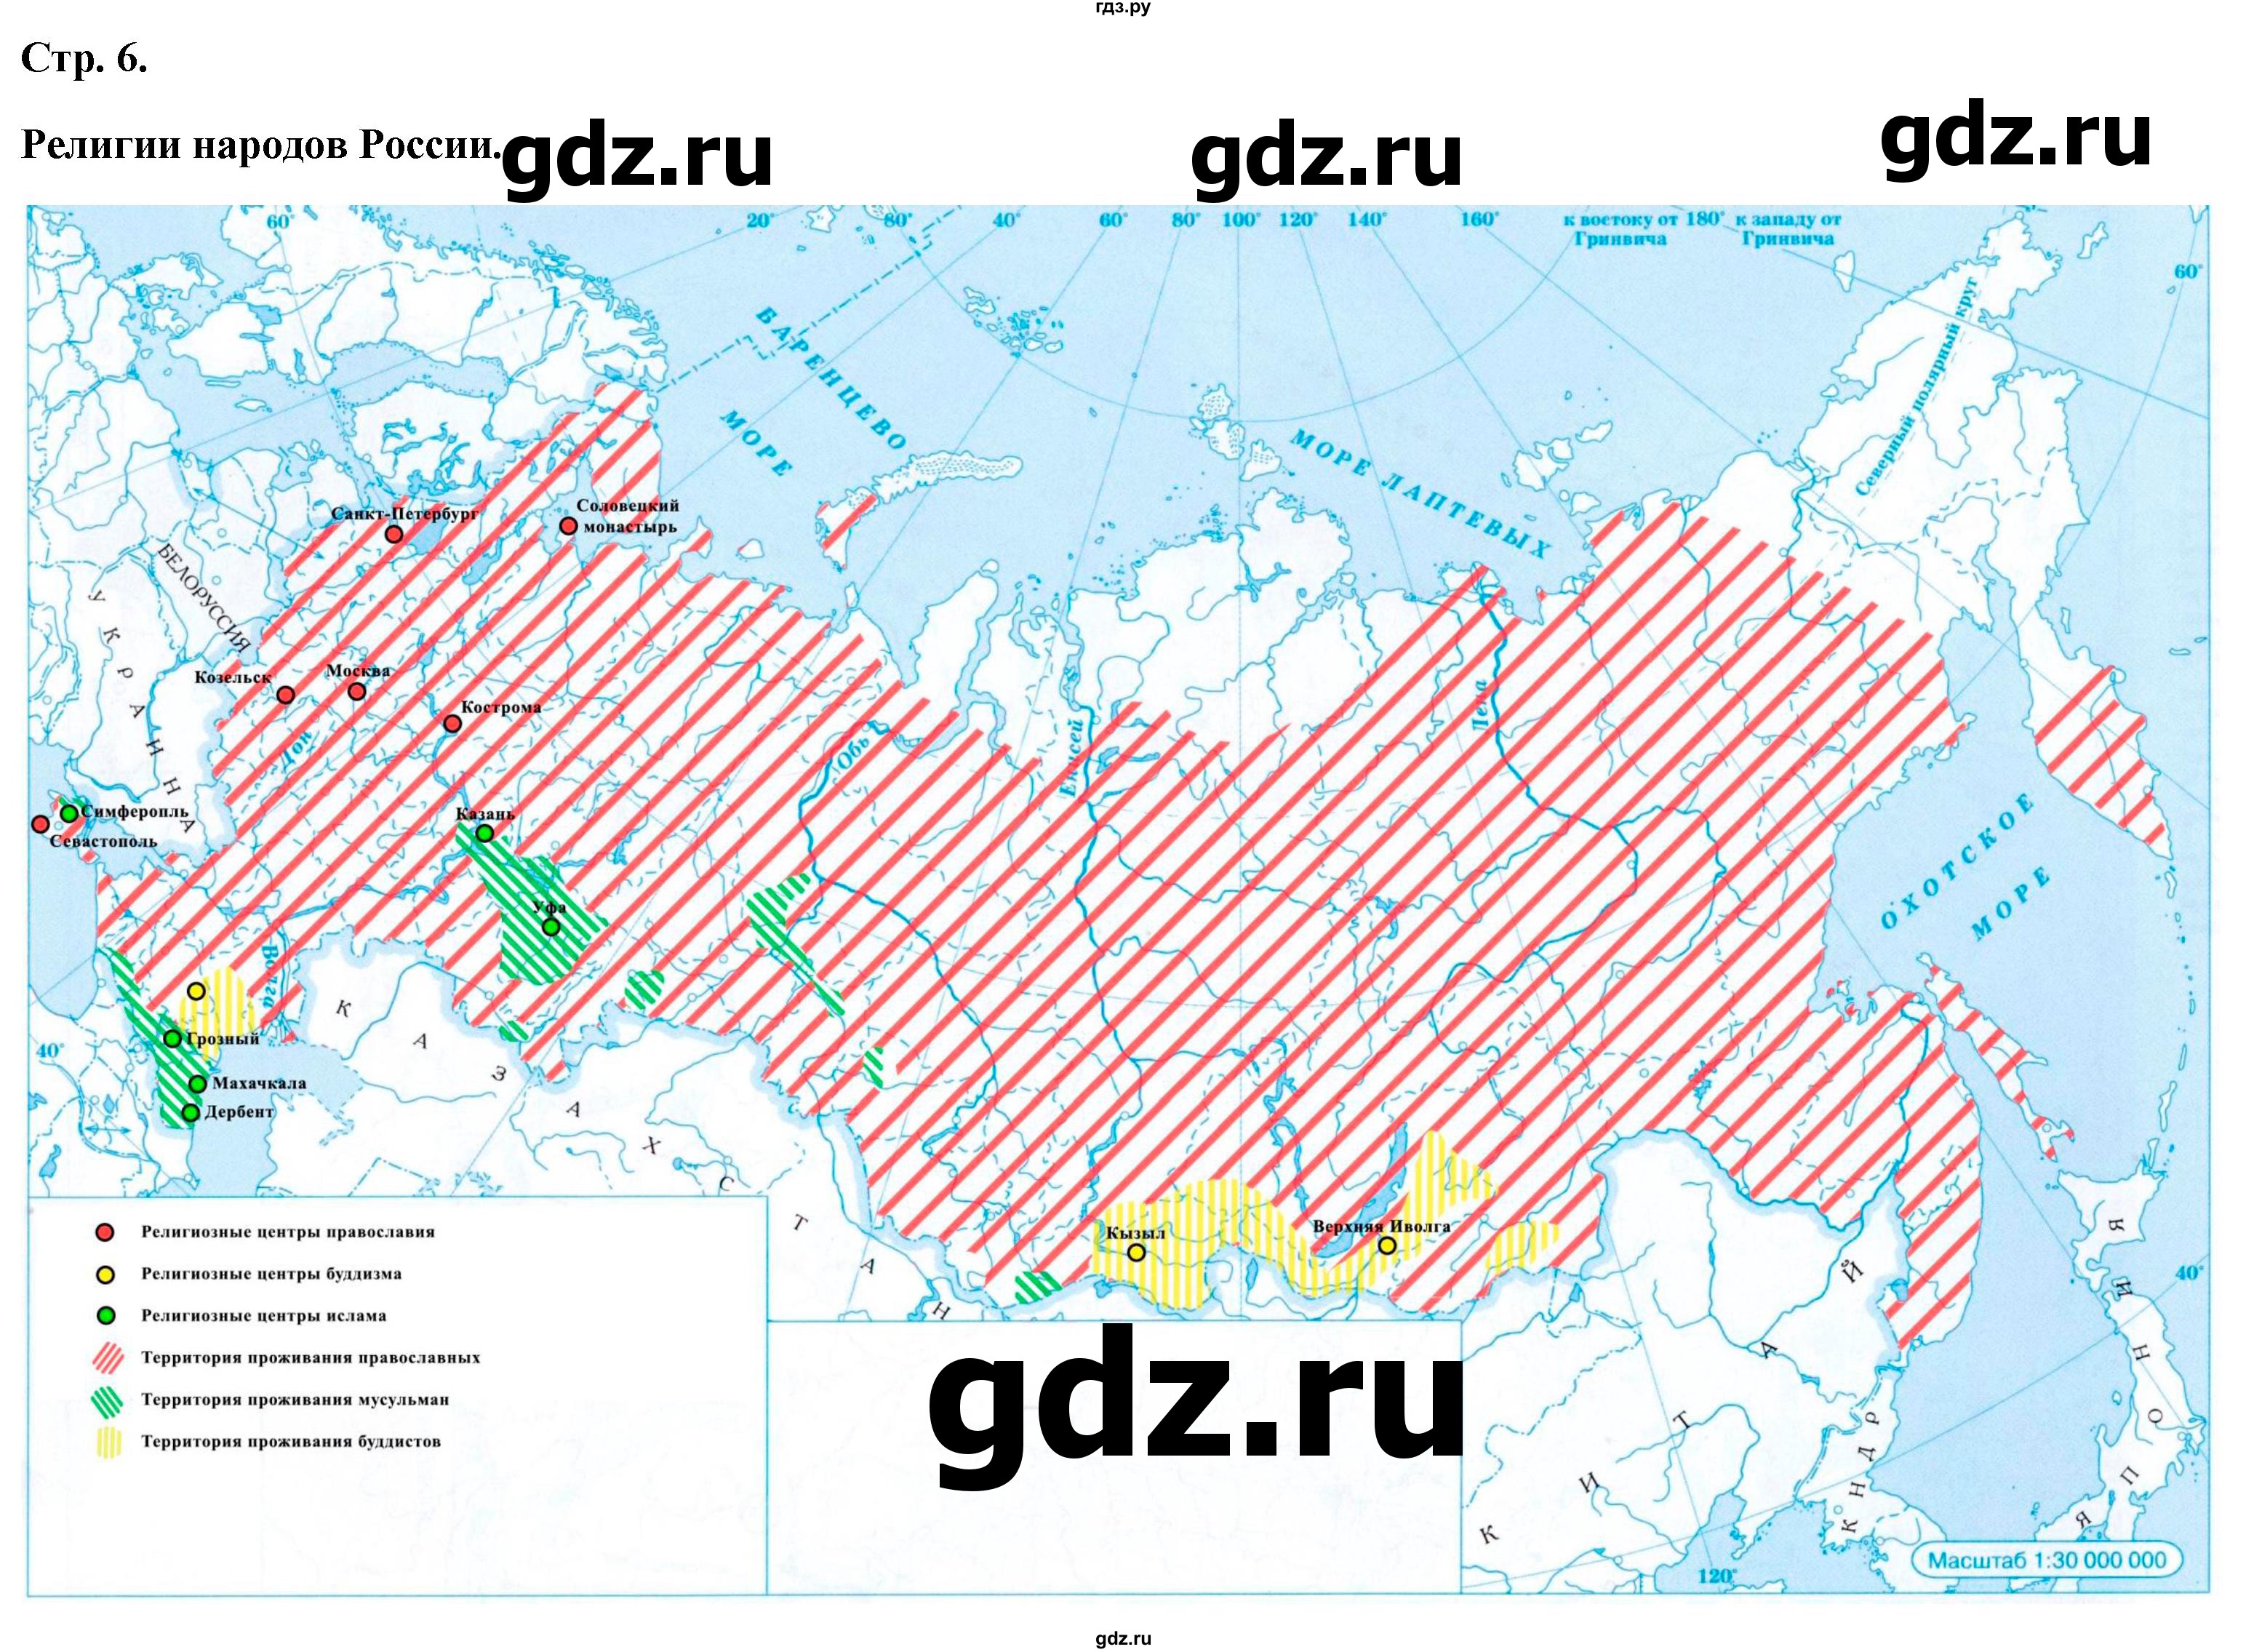 ГДЗ контурные карты стр.6 география 9 класс атлас с контурными картамиПриваловский, Курбский